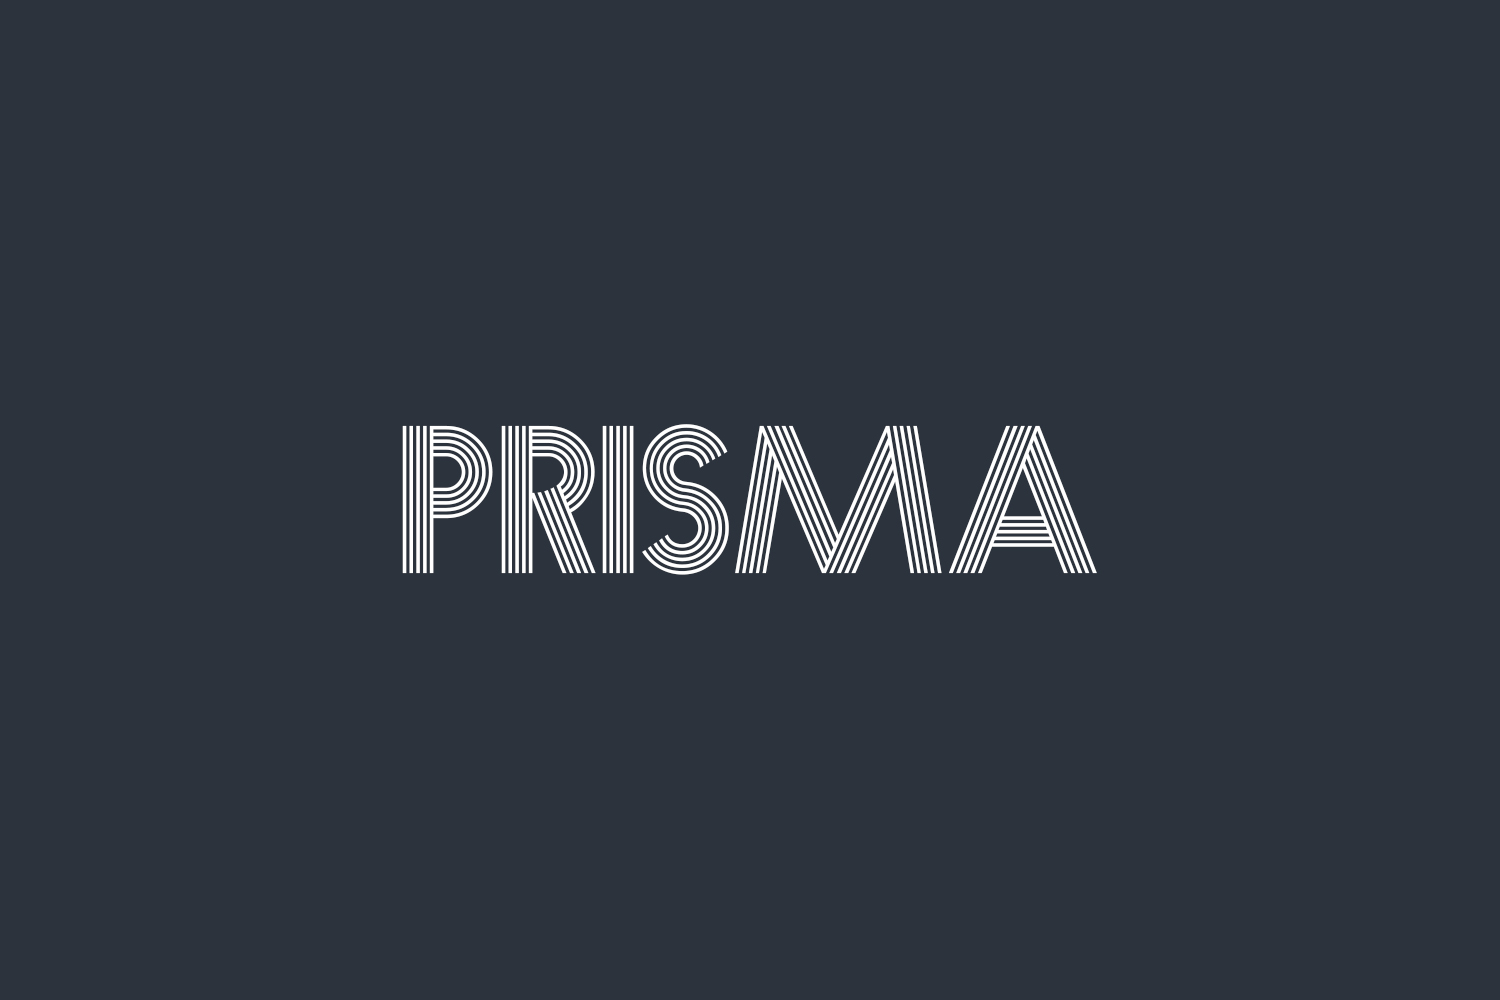 Prisma Free Font